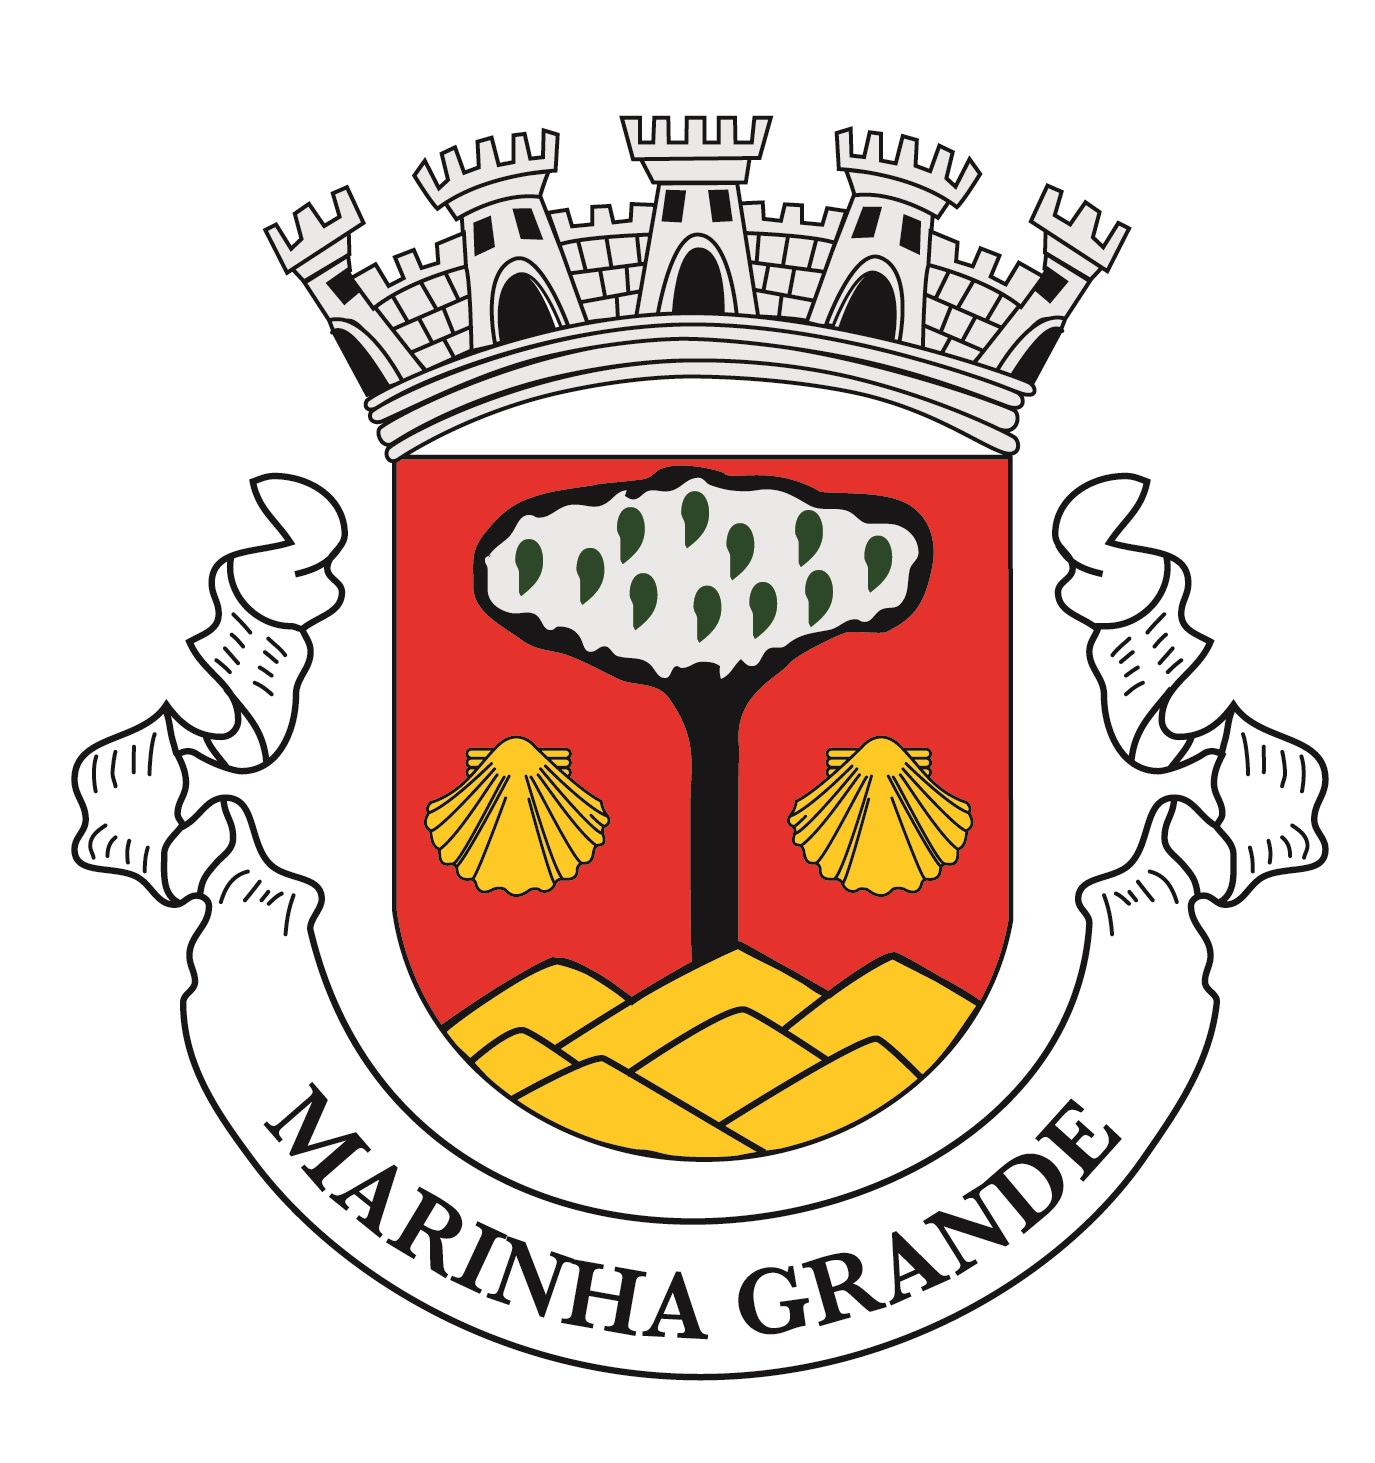 Municipio da Marinha Grande